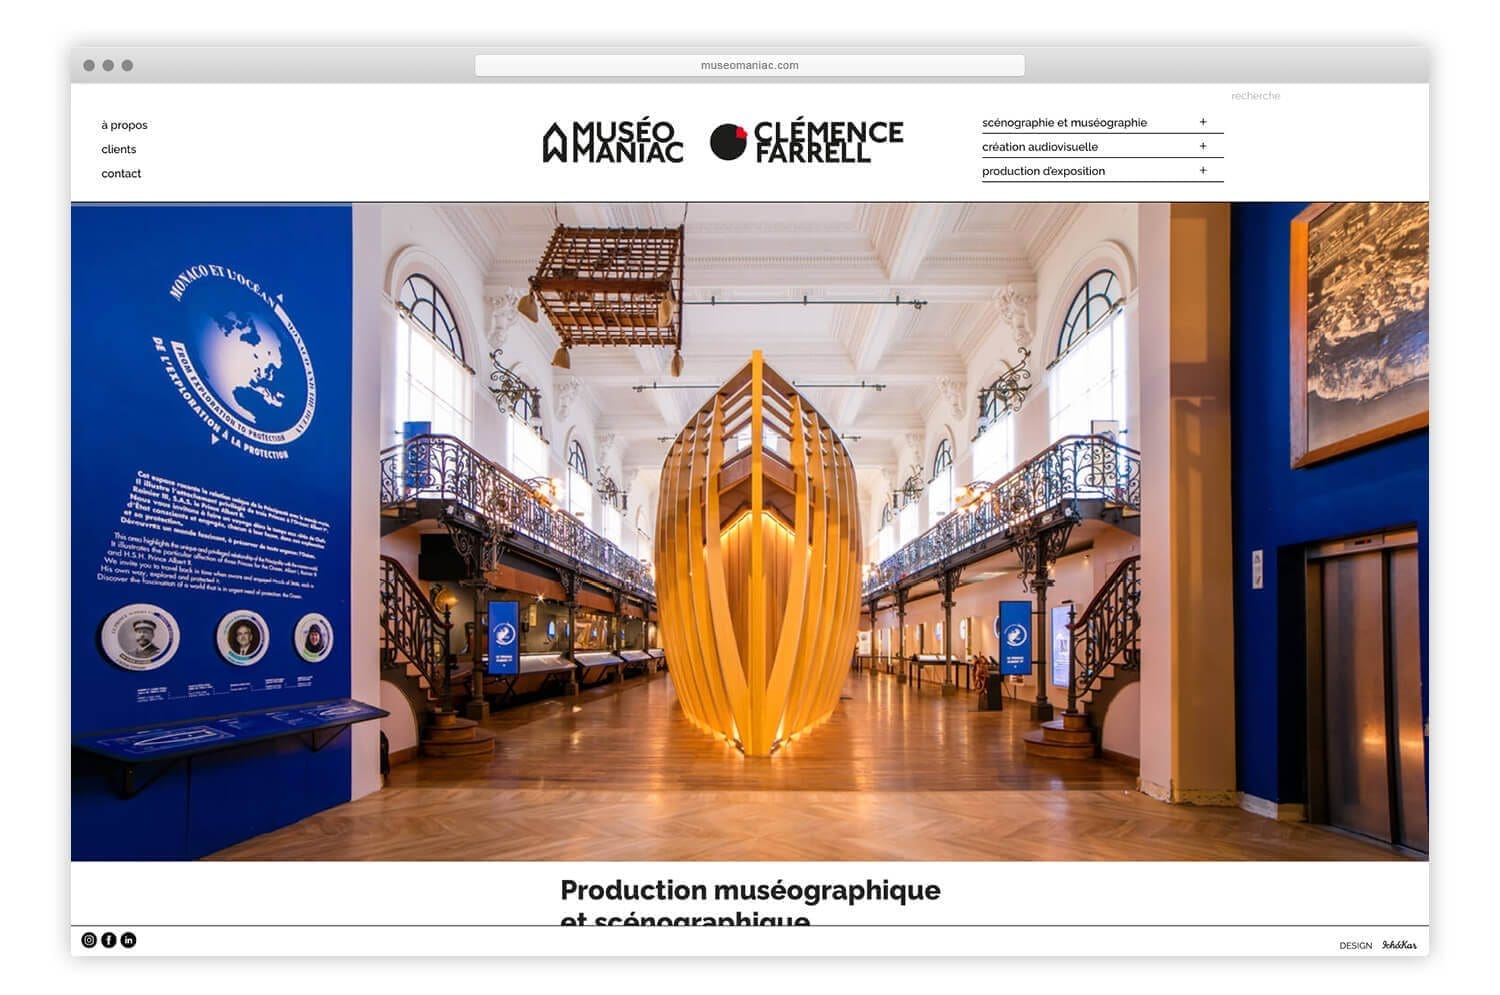 Ichetkar dessine le nouveau site web de l'agence de scénographie Museomaniac